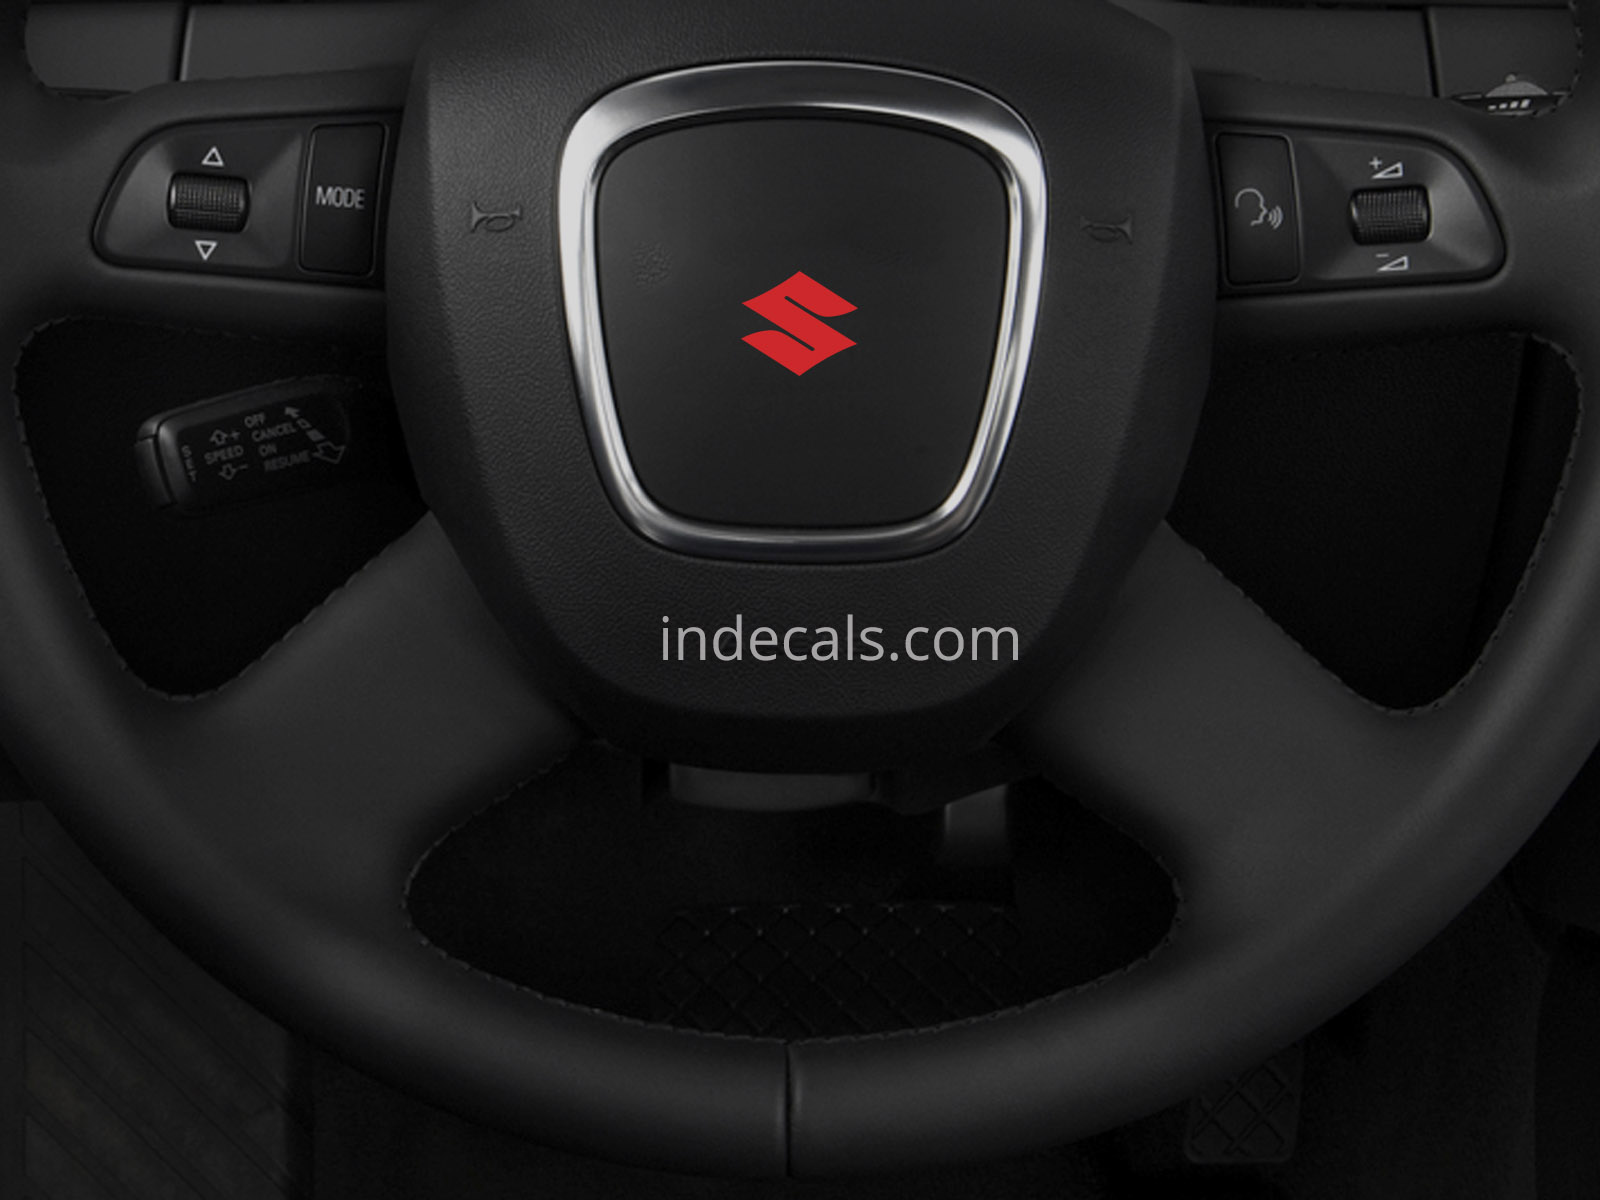 3 x Suzuki Stickers for Steering Wheel - Red